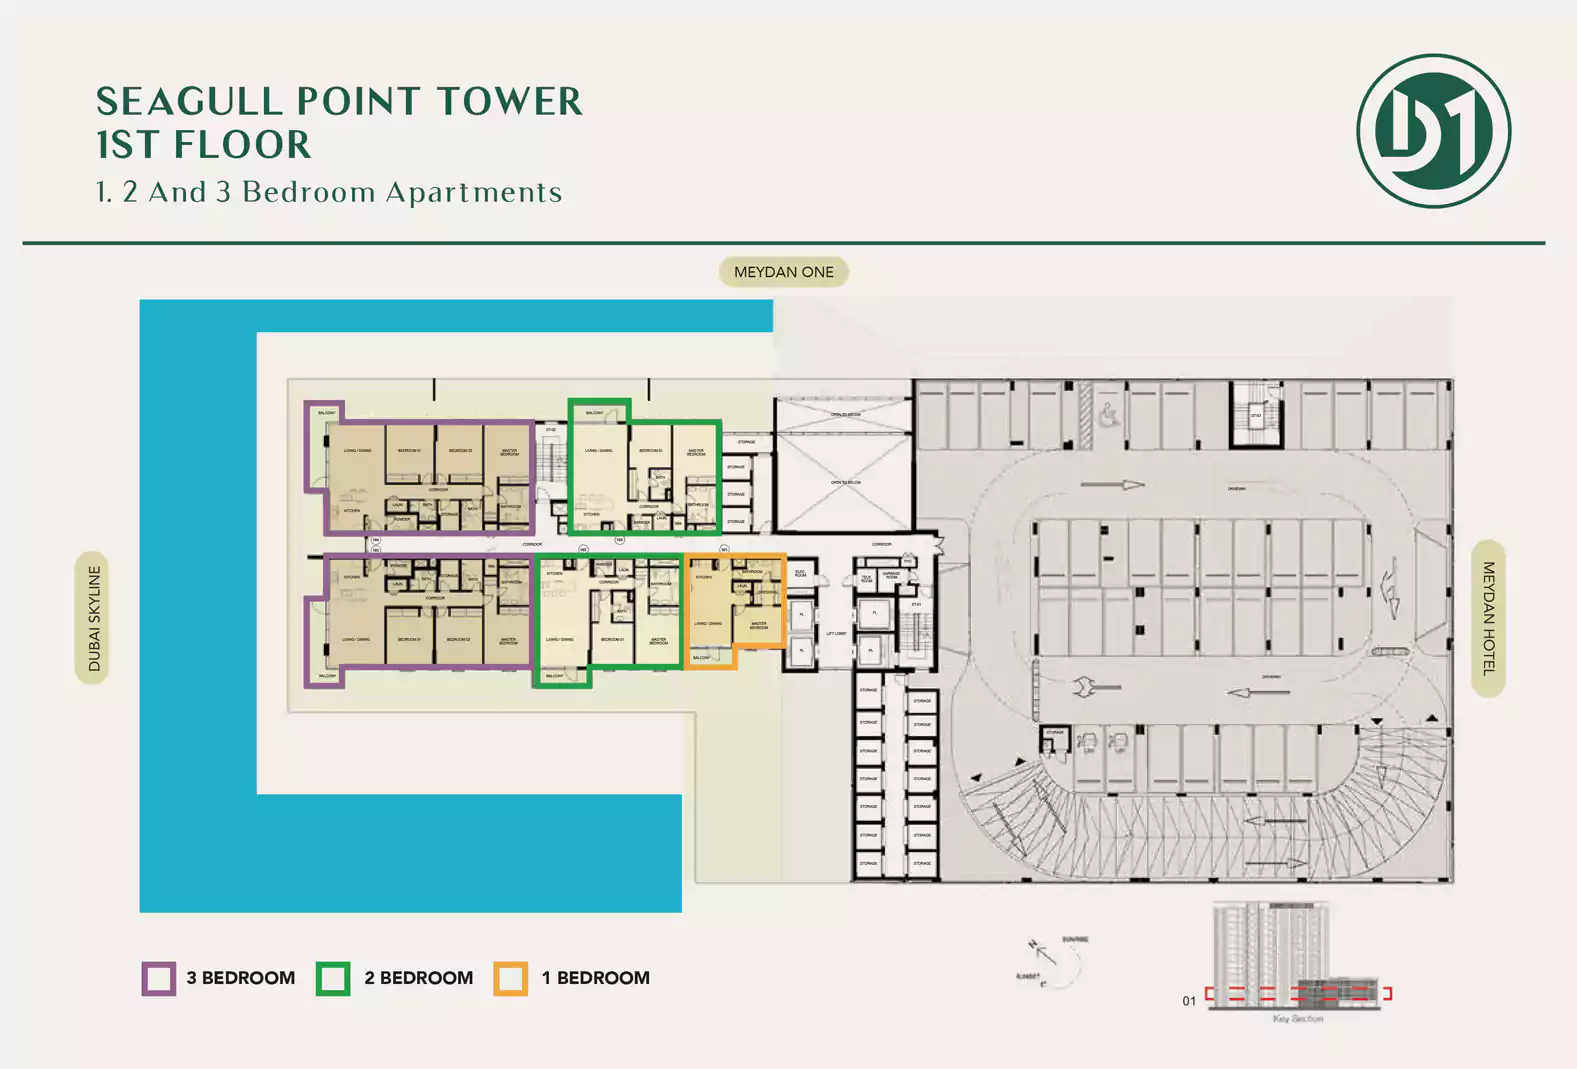 Seagull Point 1st Floor Layout Plan